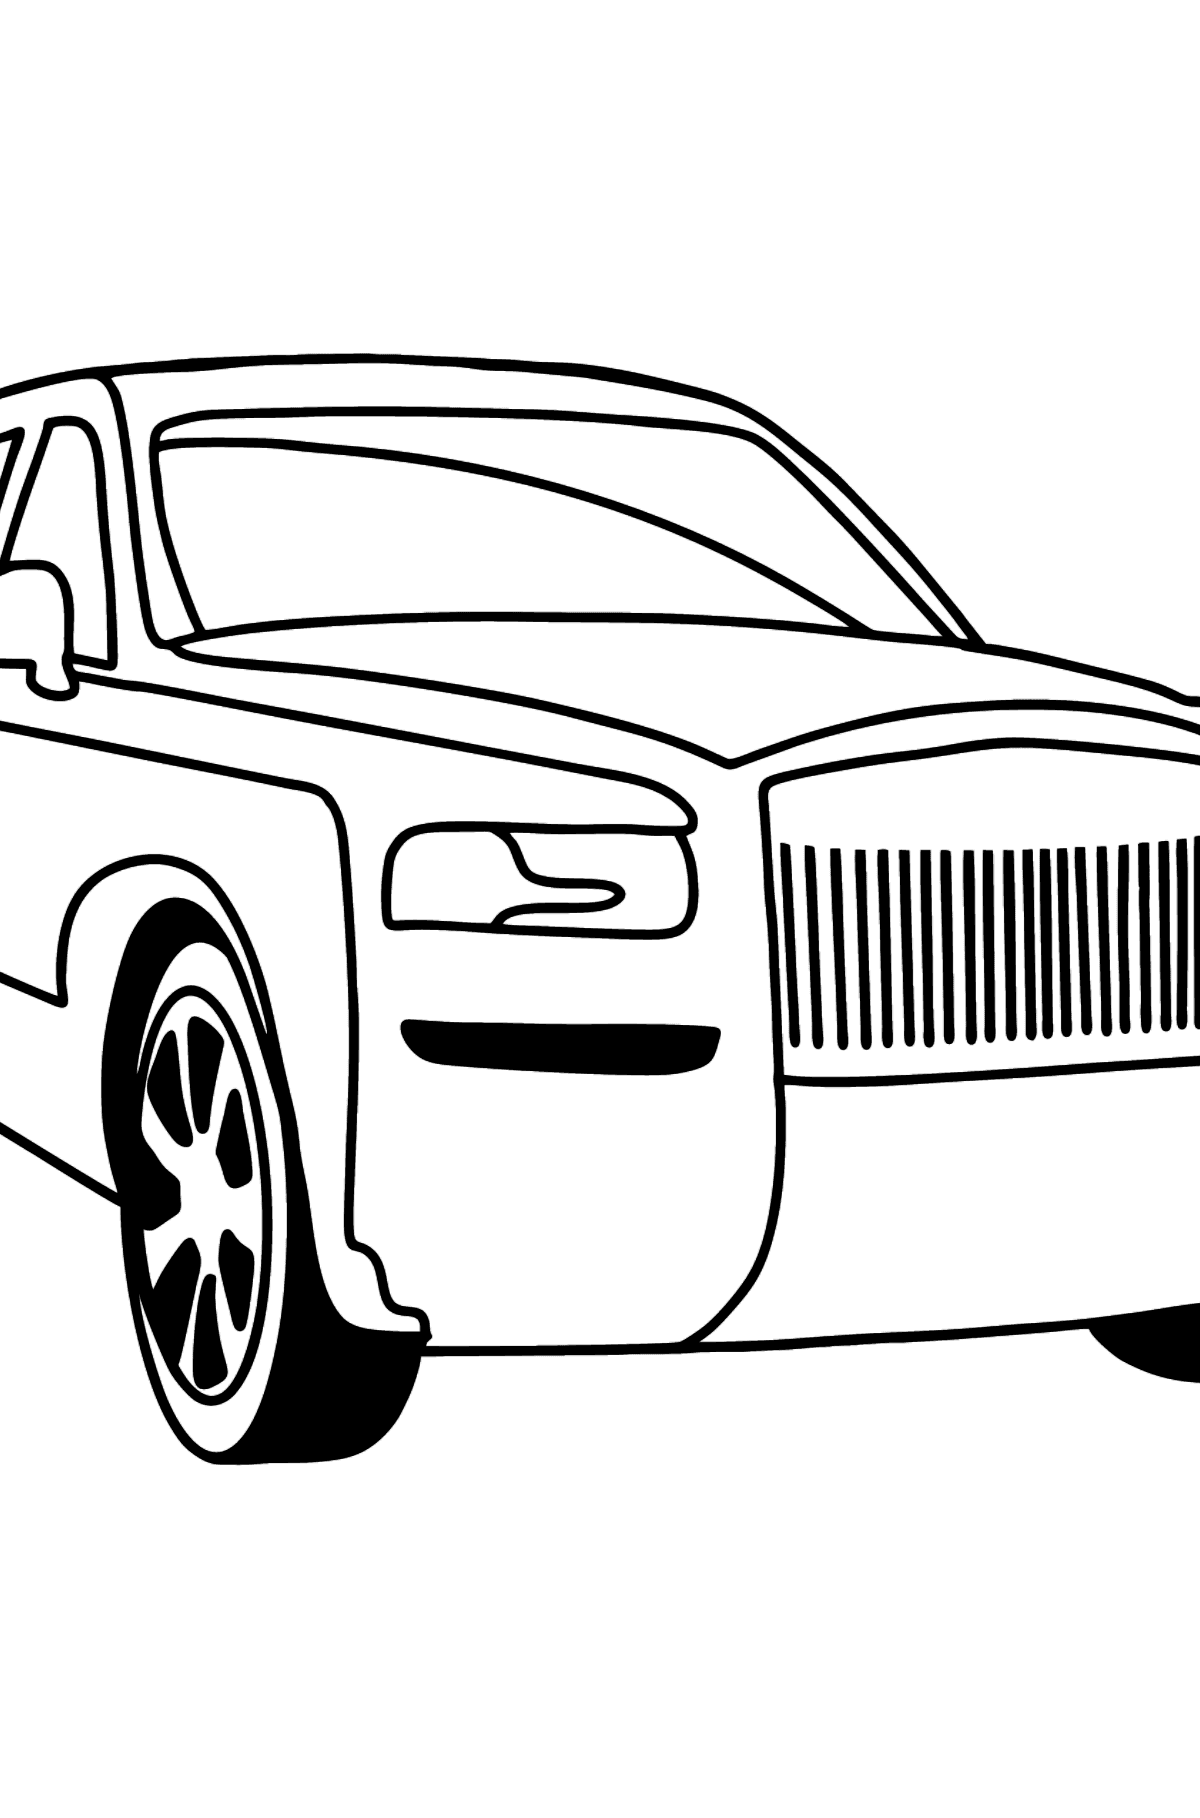 Tegning til fargelegging Rolls Royce Cullinan bil - Tegninger til fargelegging for barn